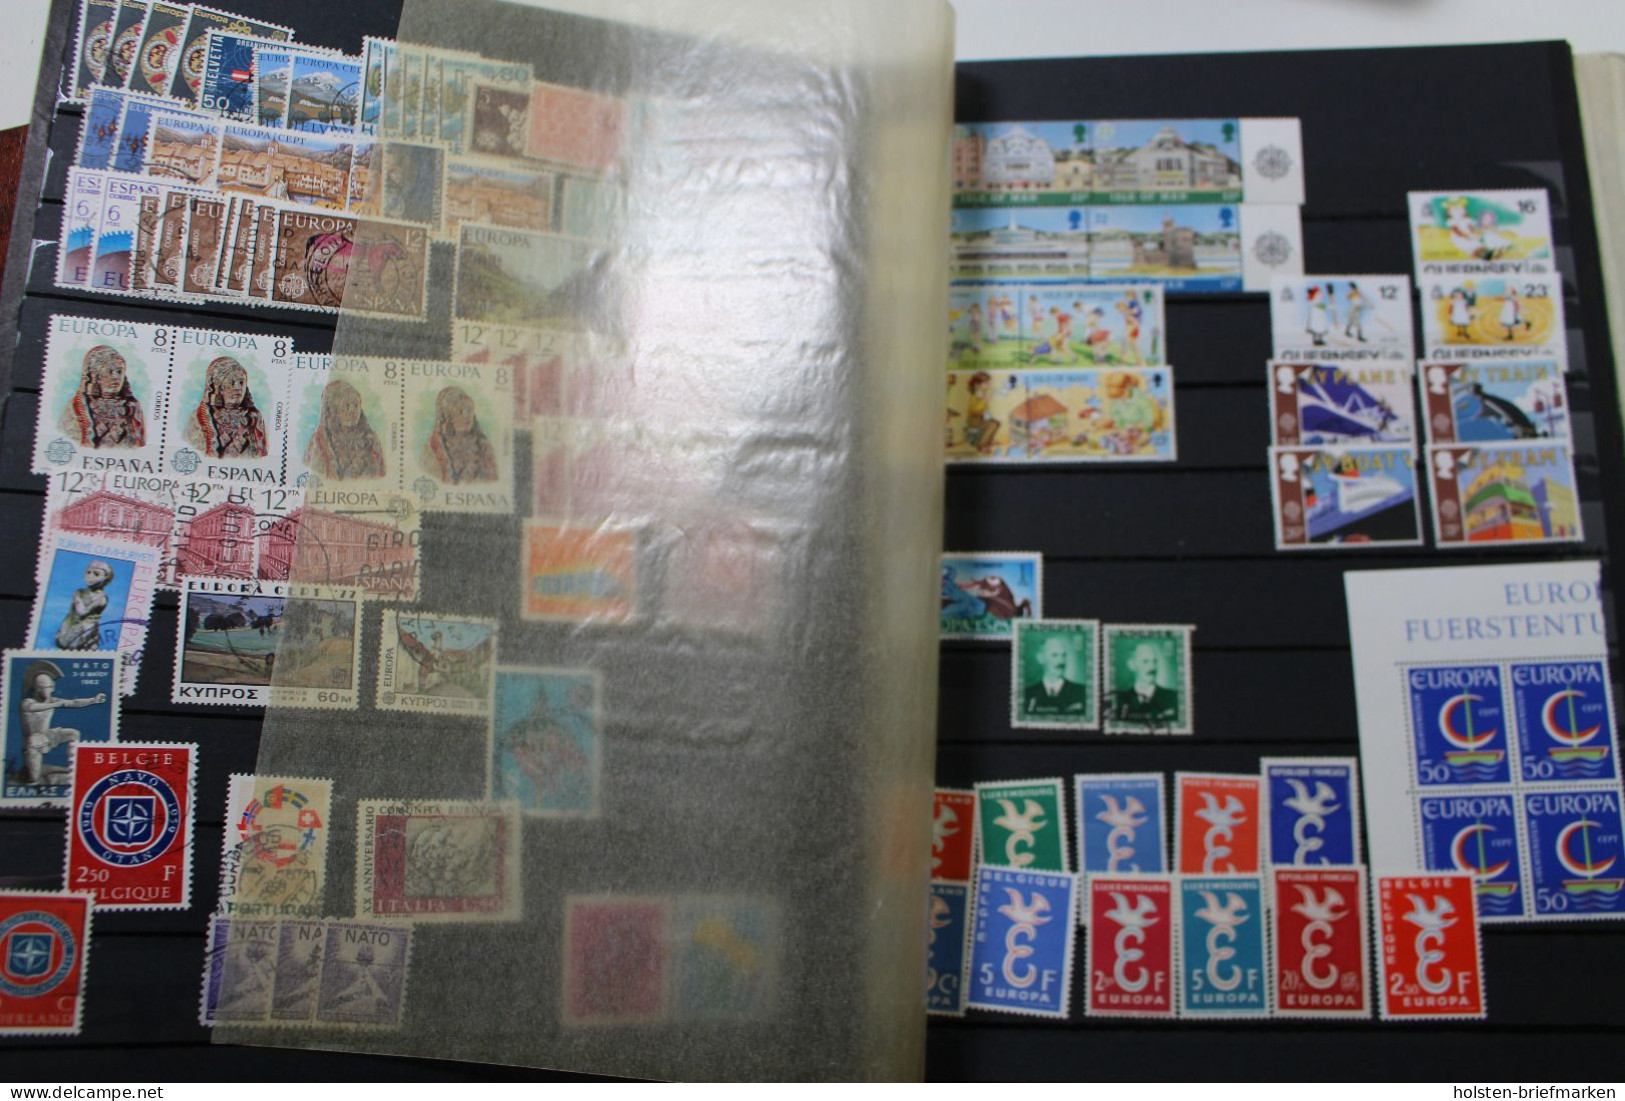 Briefmarken-Posten Europa und Übersee, großer Karton voller Alben